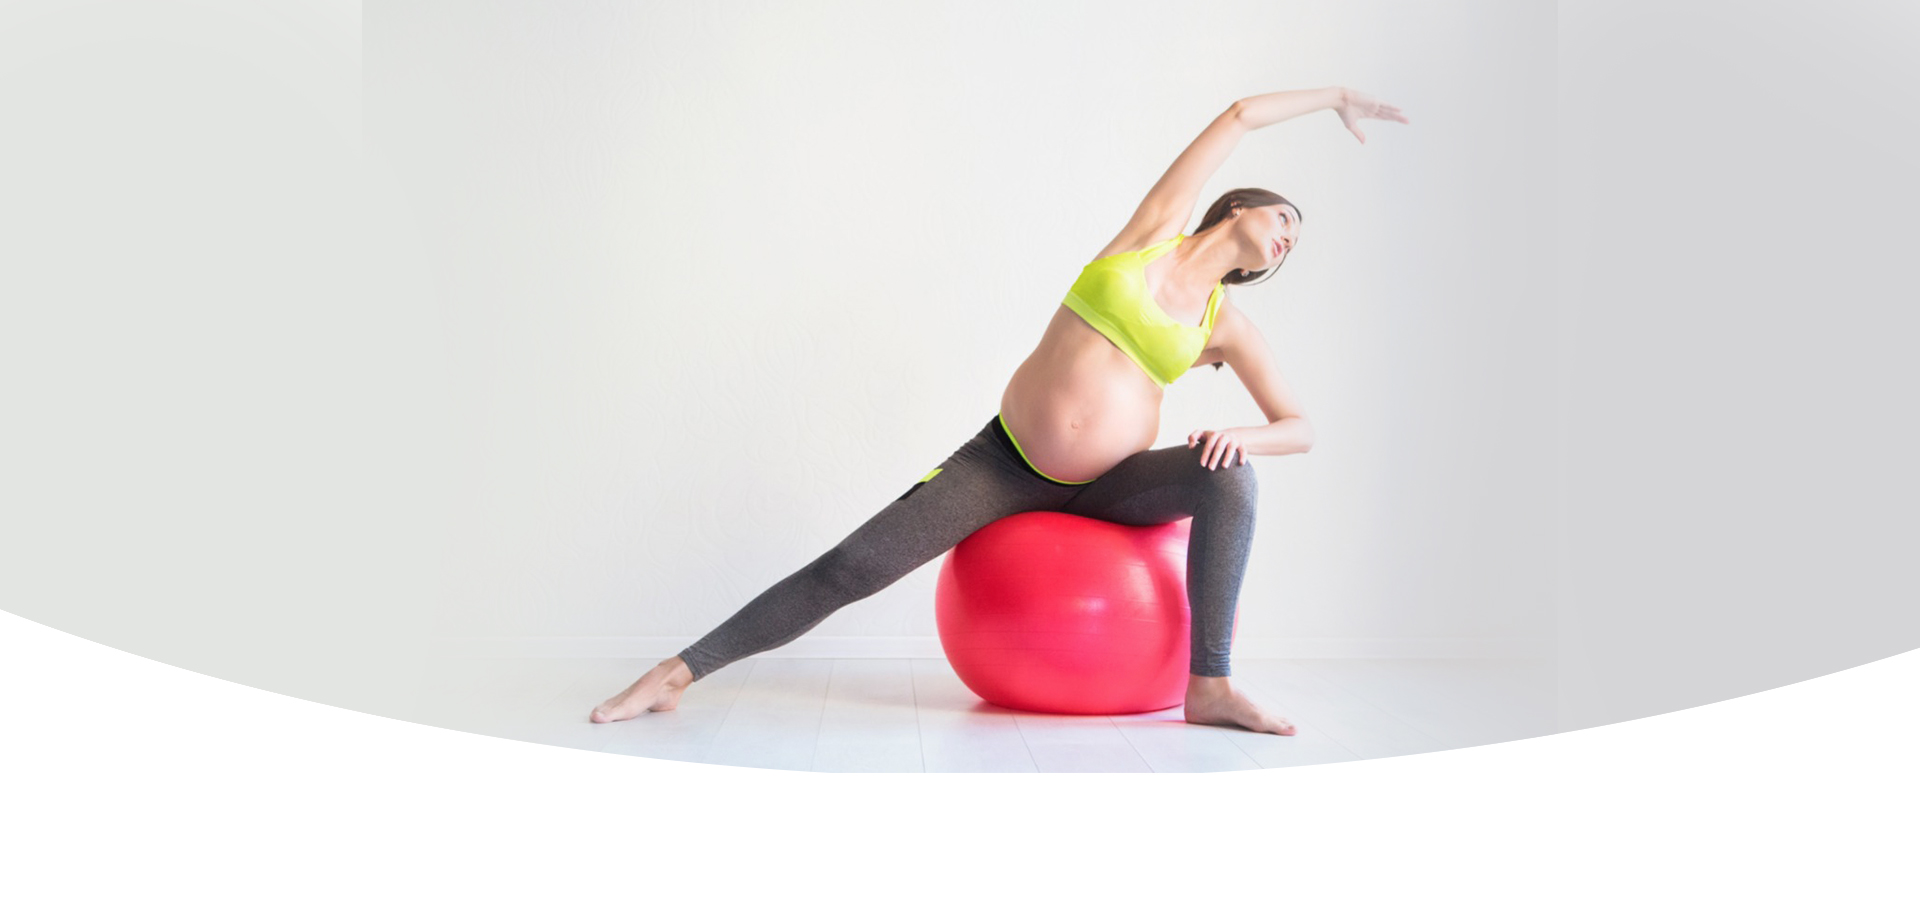 Pilates- mulher grávida fazendo exercício de pilates em bola